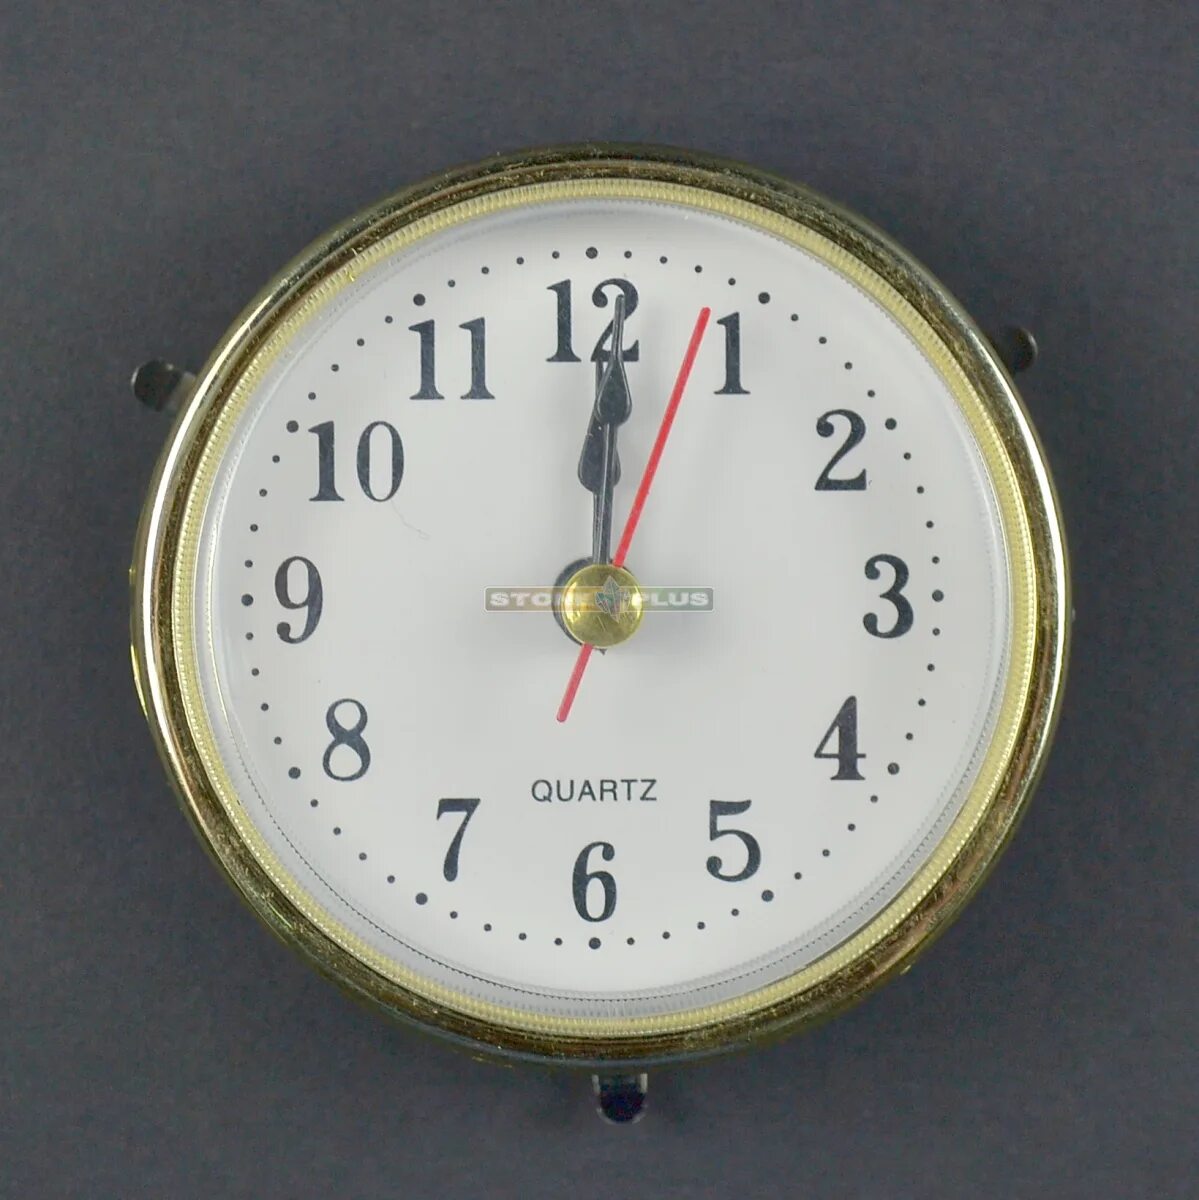 Круглый часовой механизм ostar 6304 Quartz. Кварцевый часовой механизм м2188. Встраиваемый часовой механизм для настольных часов. Часовая капсула встраиваемые. 5 33 на часах